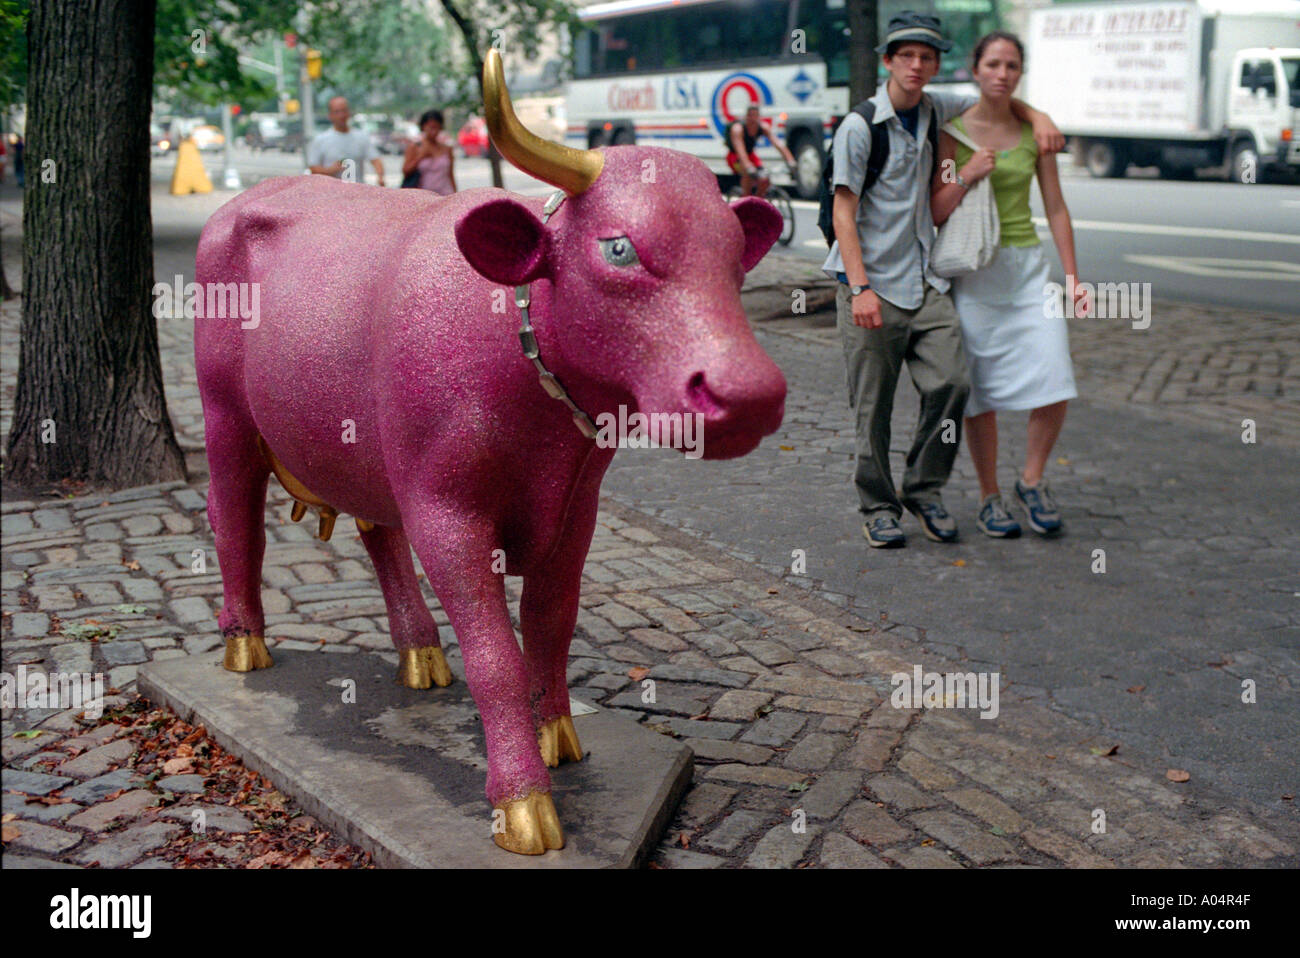 Berühmte Künstler wurden eingeladen, zu malen und dekorieren Kühe in New York City im Jahr 2000. Stockfoto